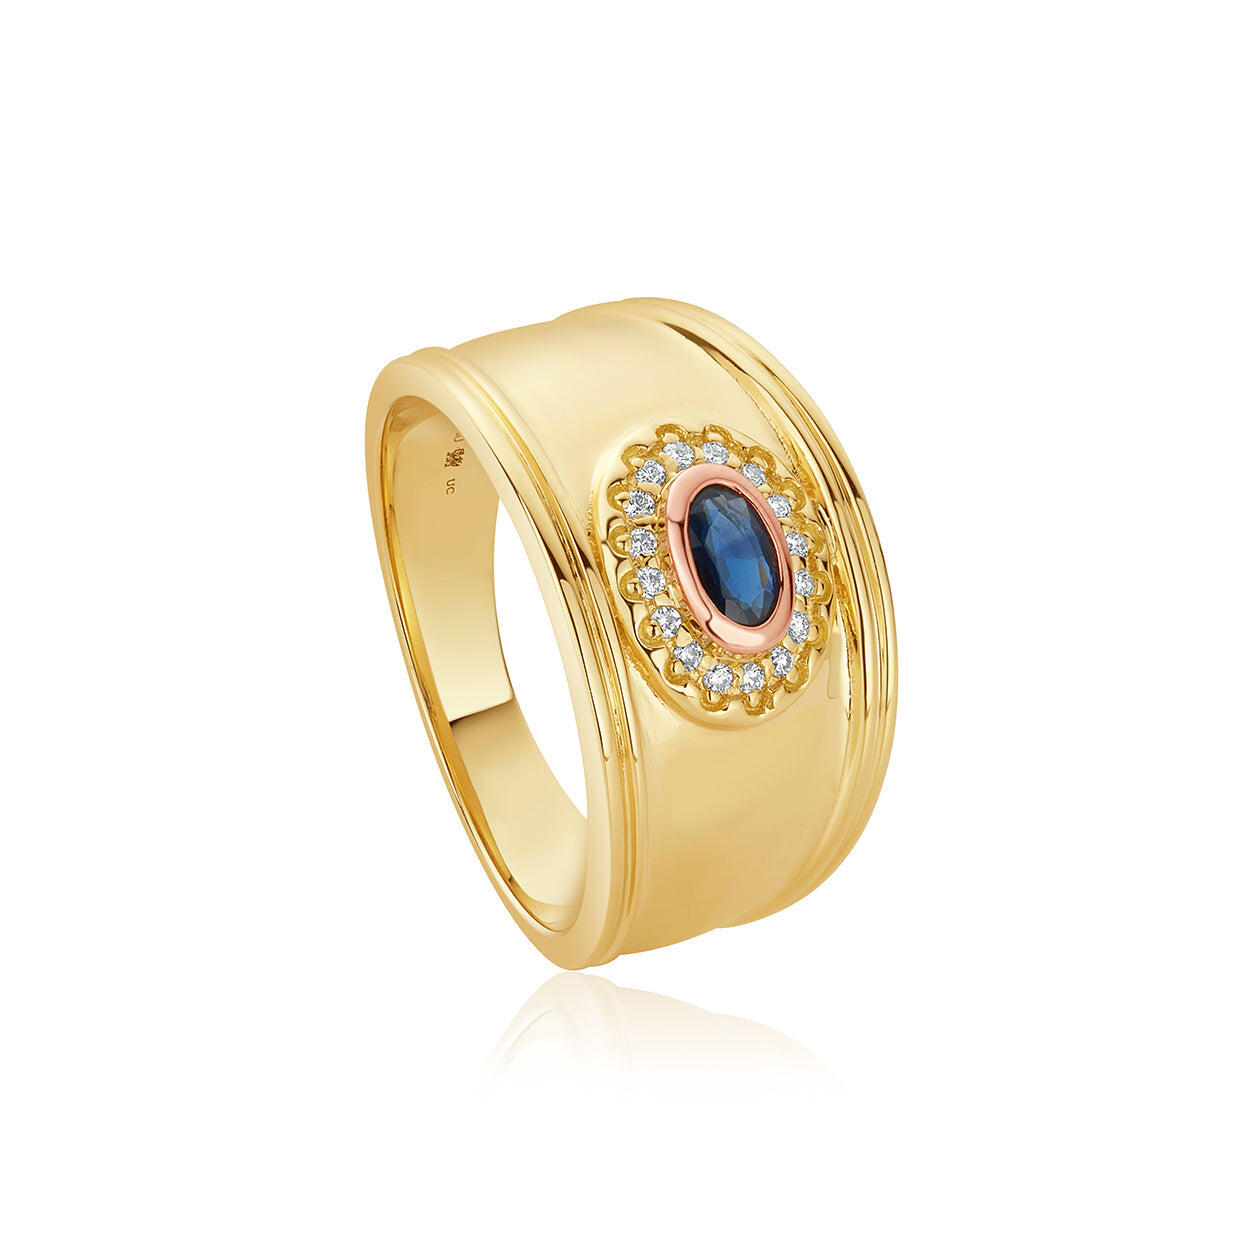 Clogau Princess Diana Sapphire Diamond 9ct Gold Ring - P